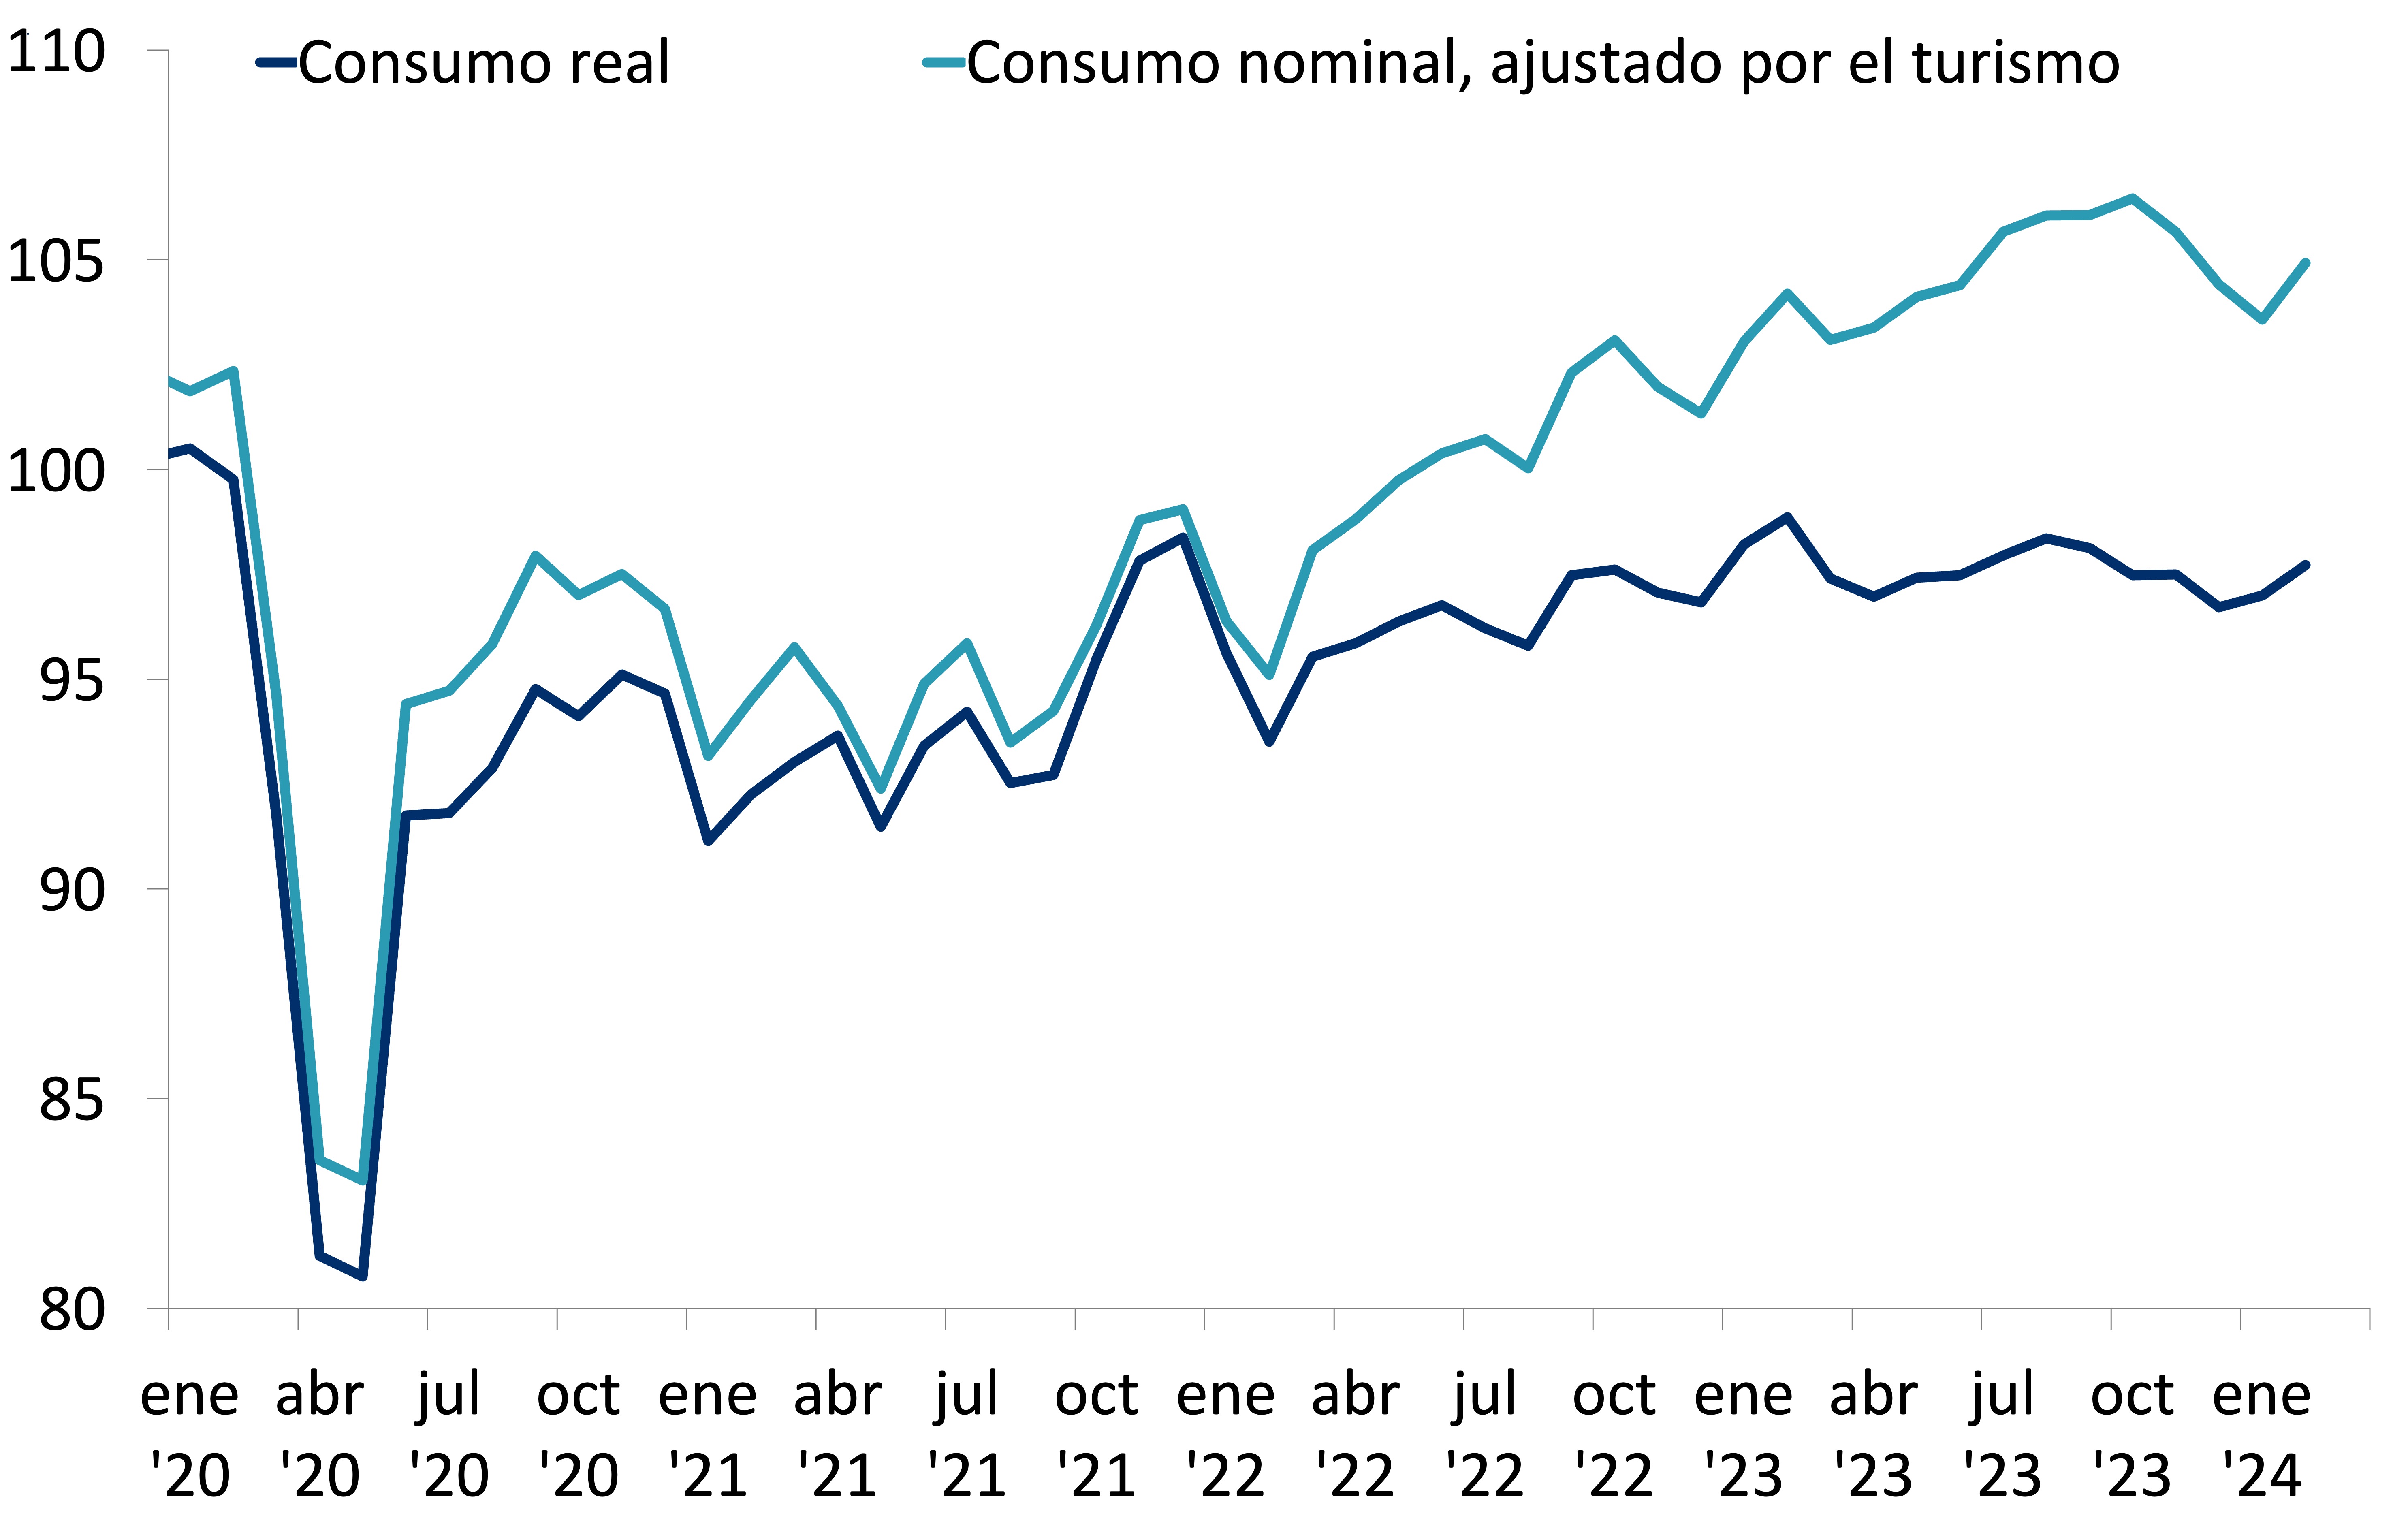 Consumo nominal ajustado por turismo crece y hay mejora incremental del consumo real